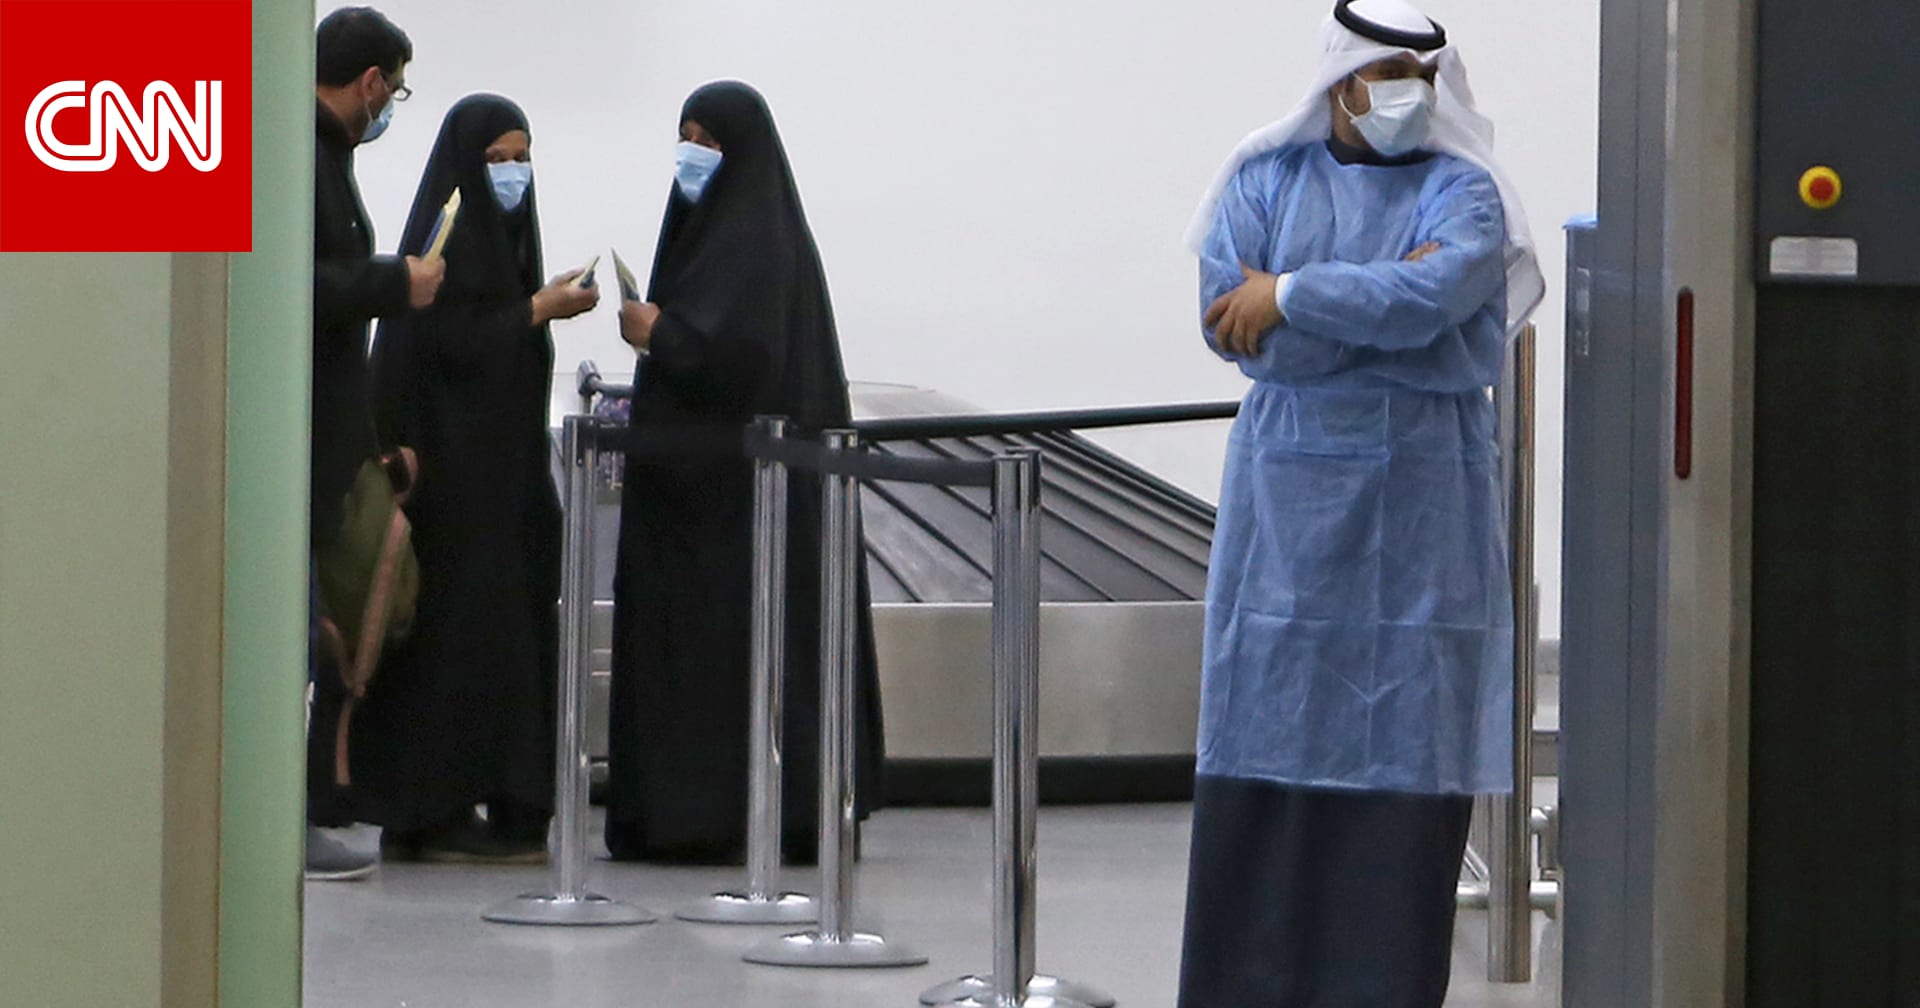 الكويت تسجل 10 إصابات جديدة بفيروس كورونا ليصل الإجمالي إلى 56 شخصًا - CNN Arabic